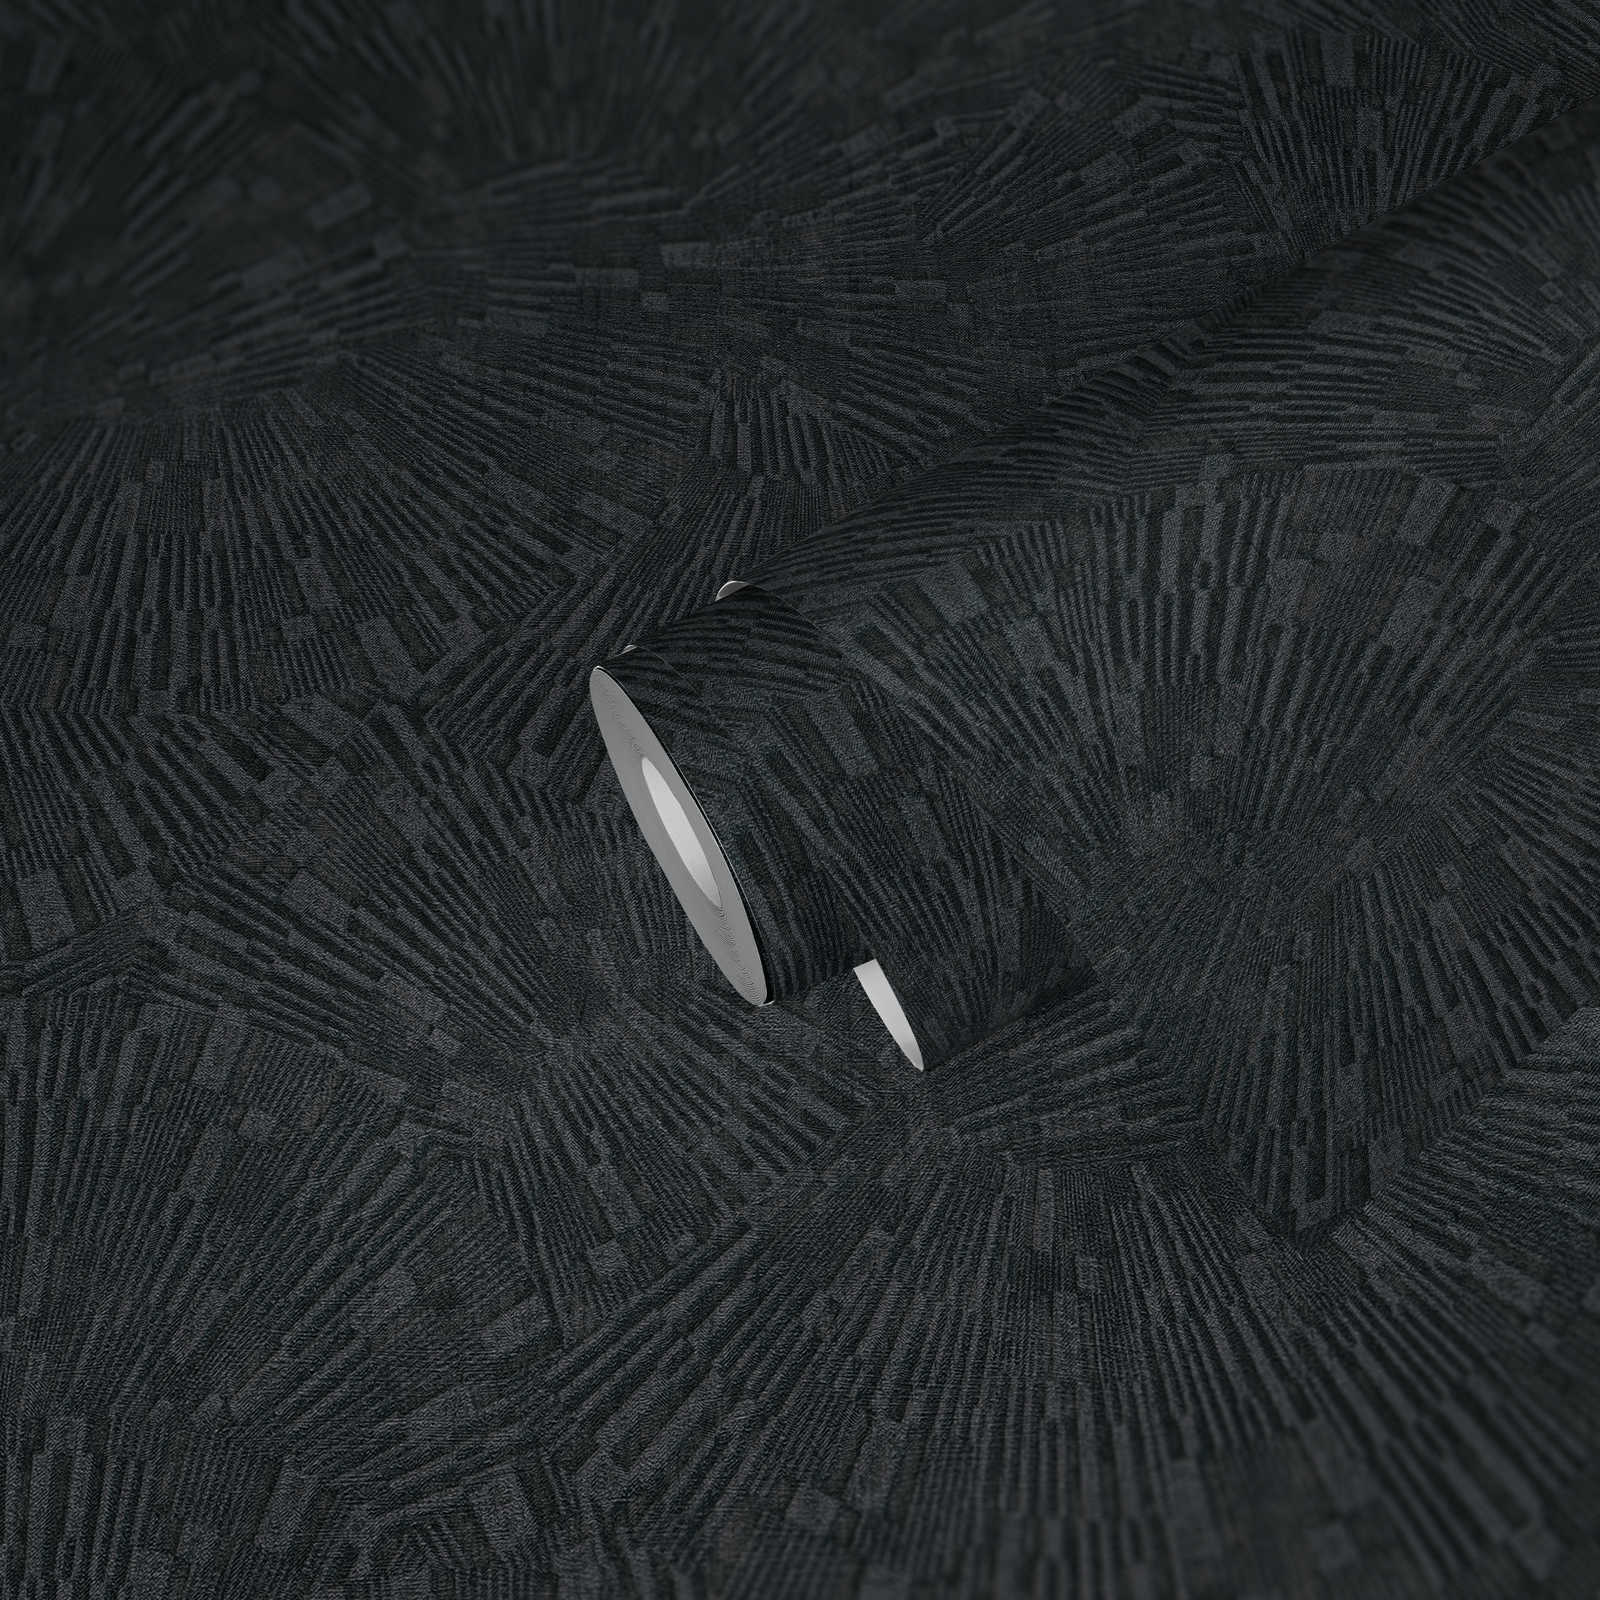             Zwart behang glanzend met textuureffect - Bruin, Zwart
        